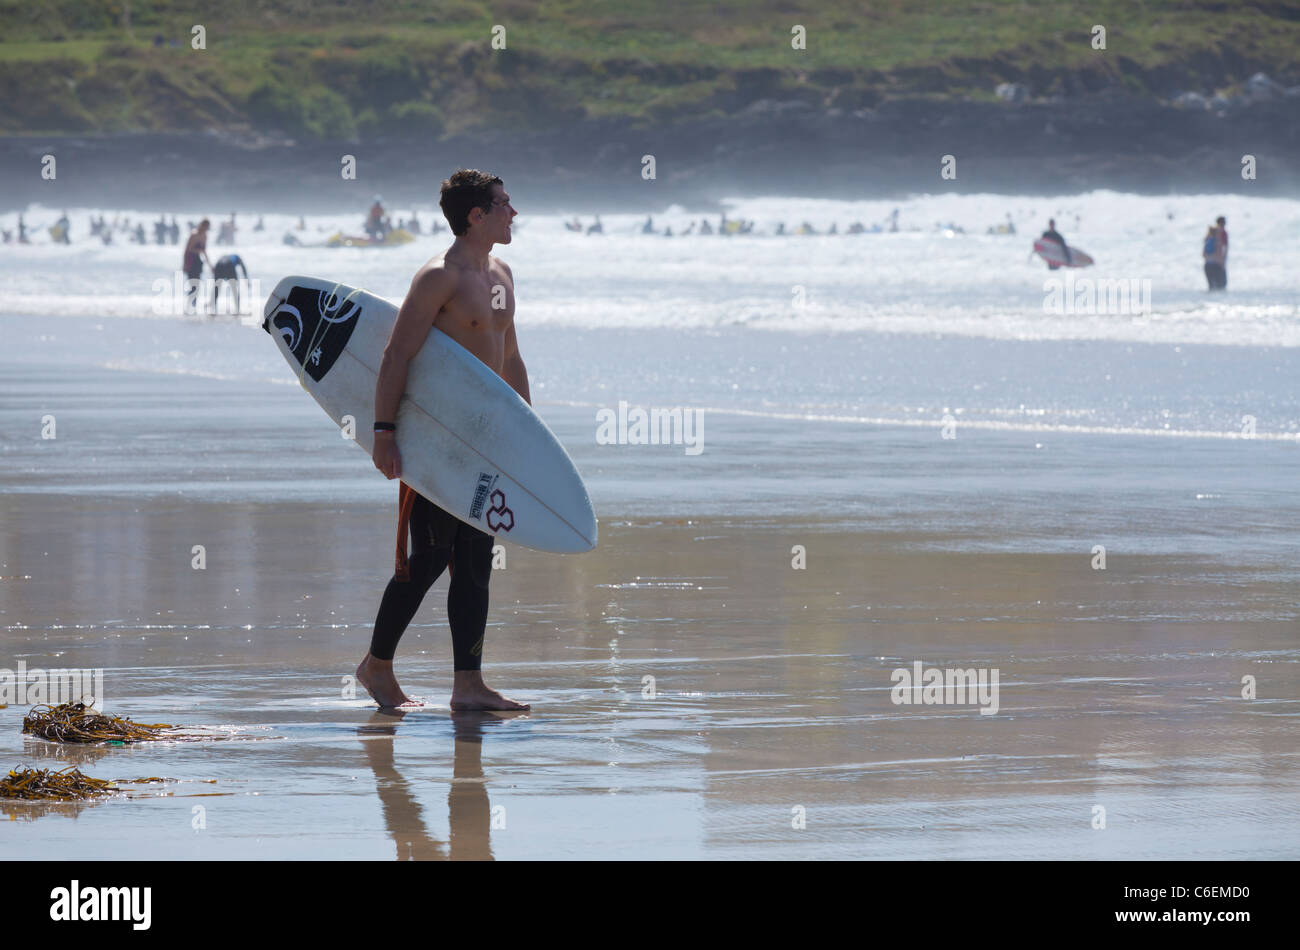 La plage de fistral surfers dans l'eau newquay Cornwall England UK GB Angleterre de l'UNION EUROPÉENNE Banque D'Images